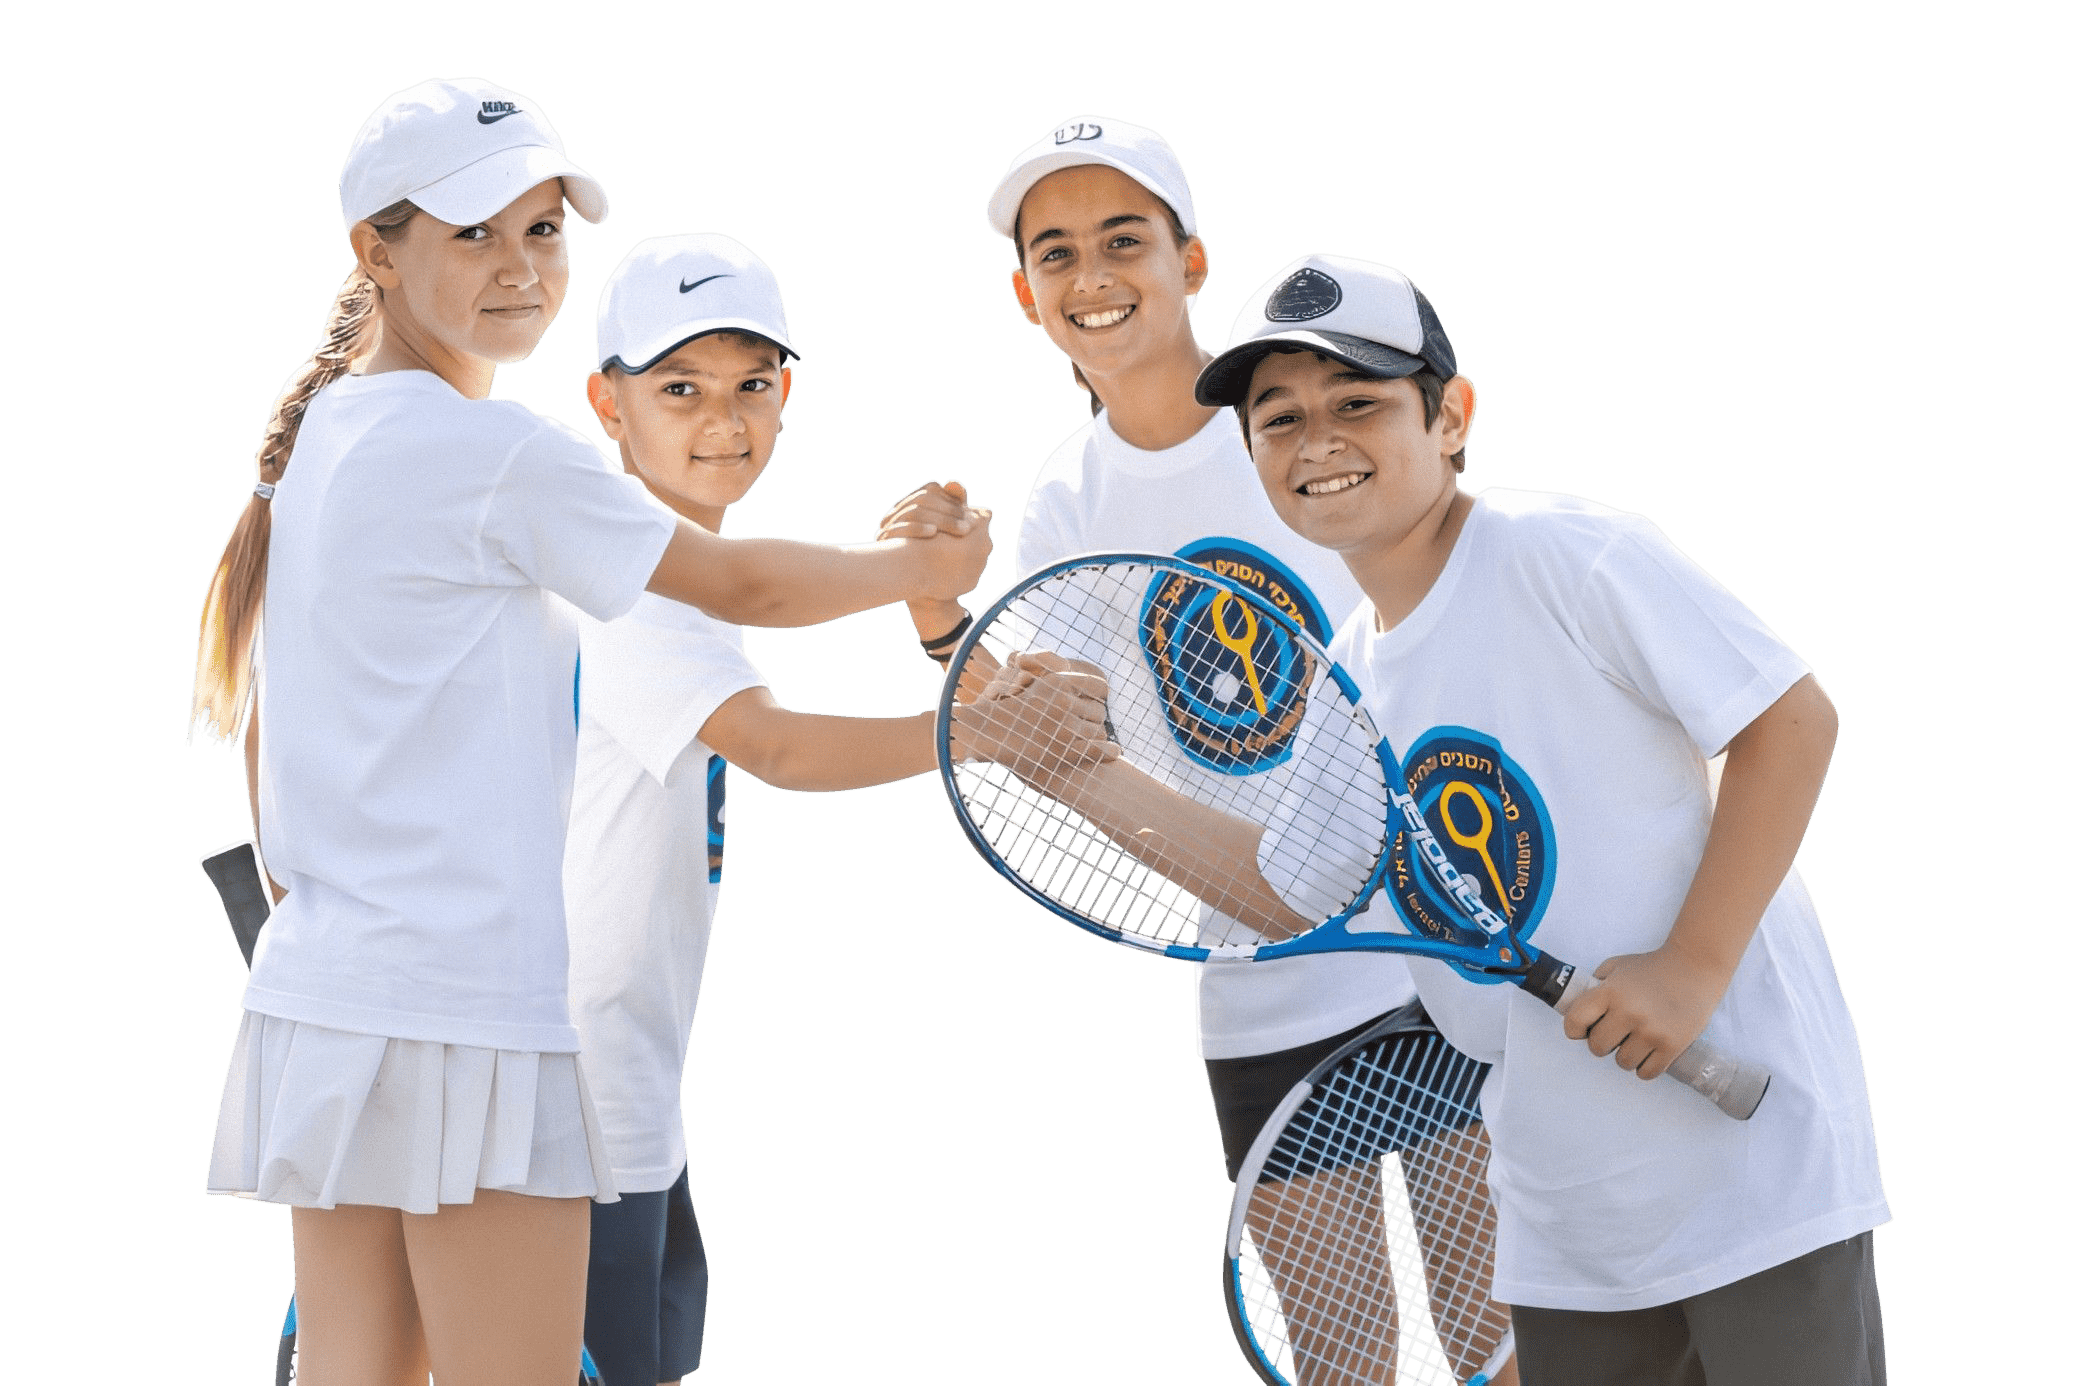 תמונה ילדים לוחצים ידים של מרכזי הטניס והחינוך בישראל